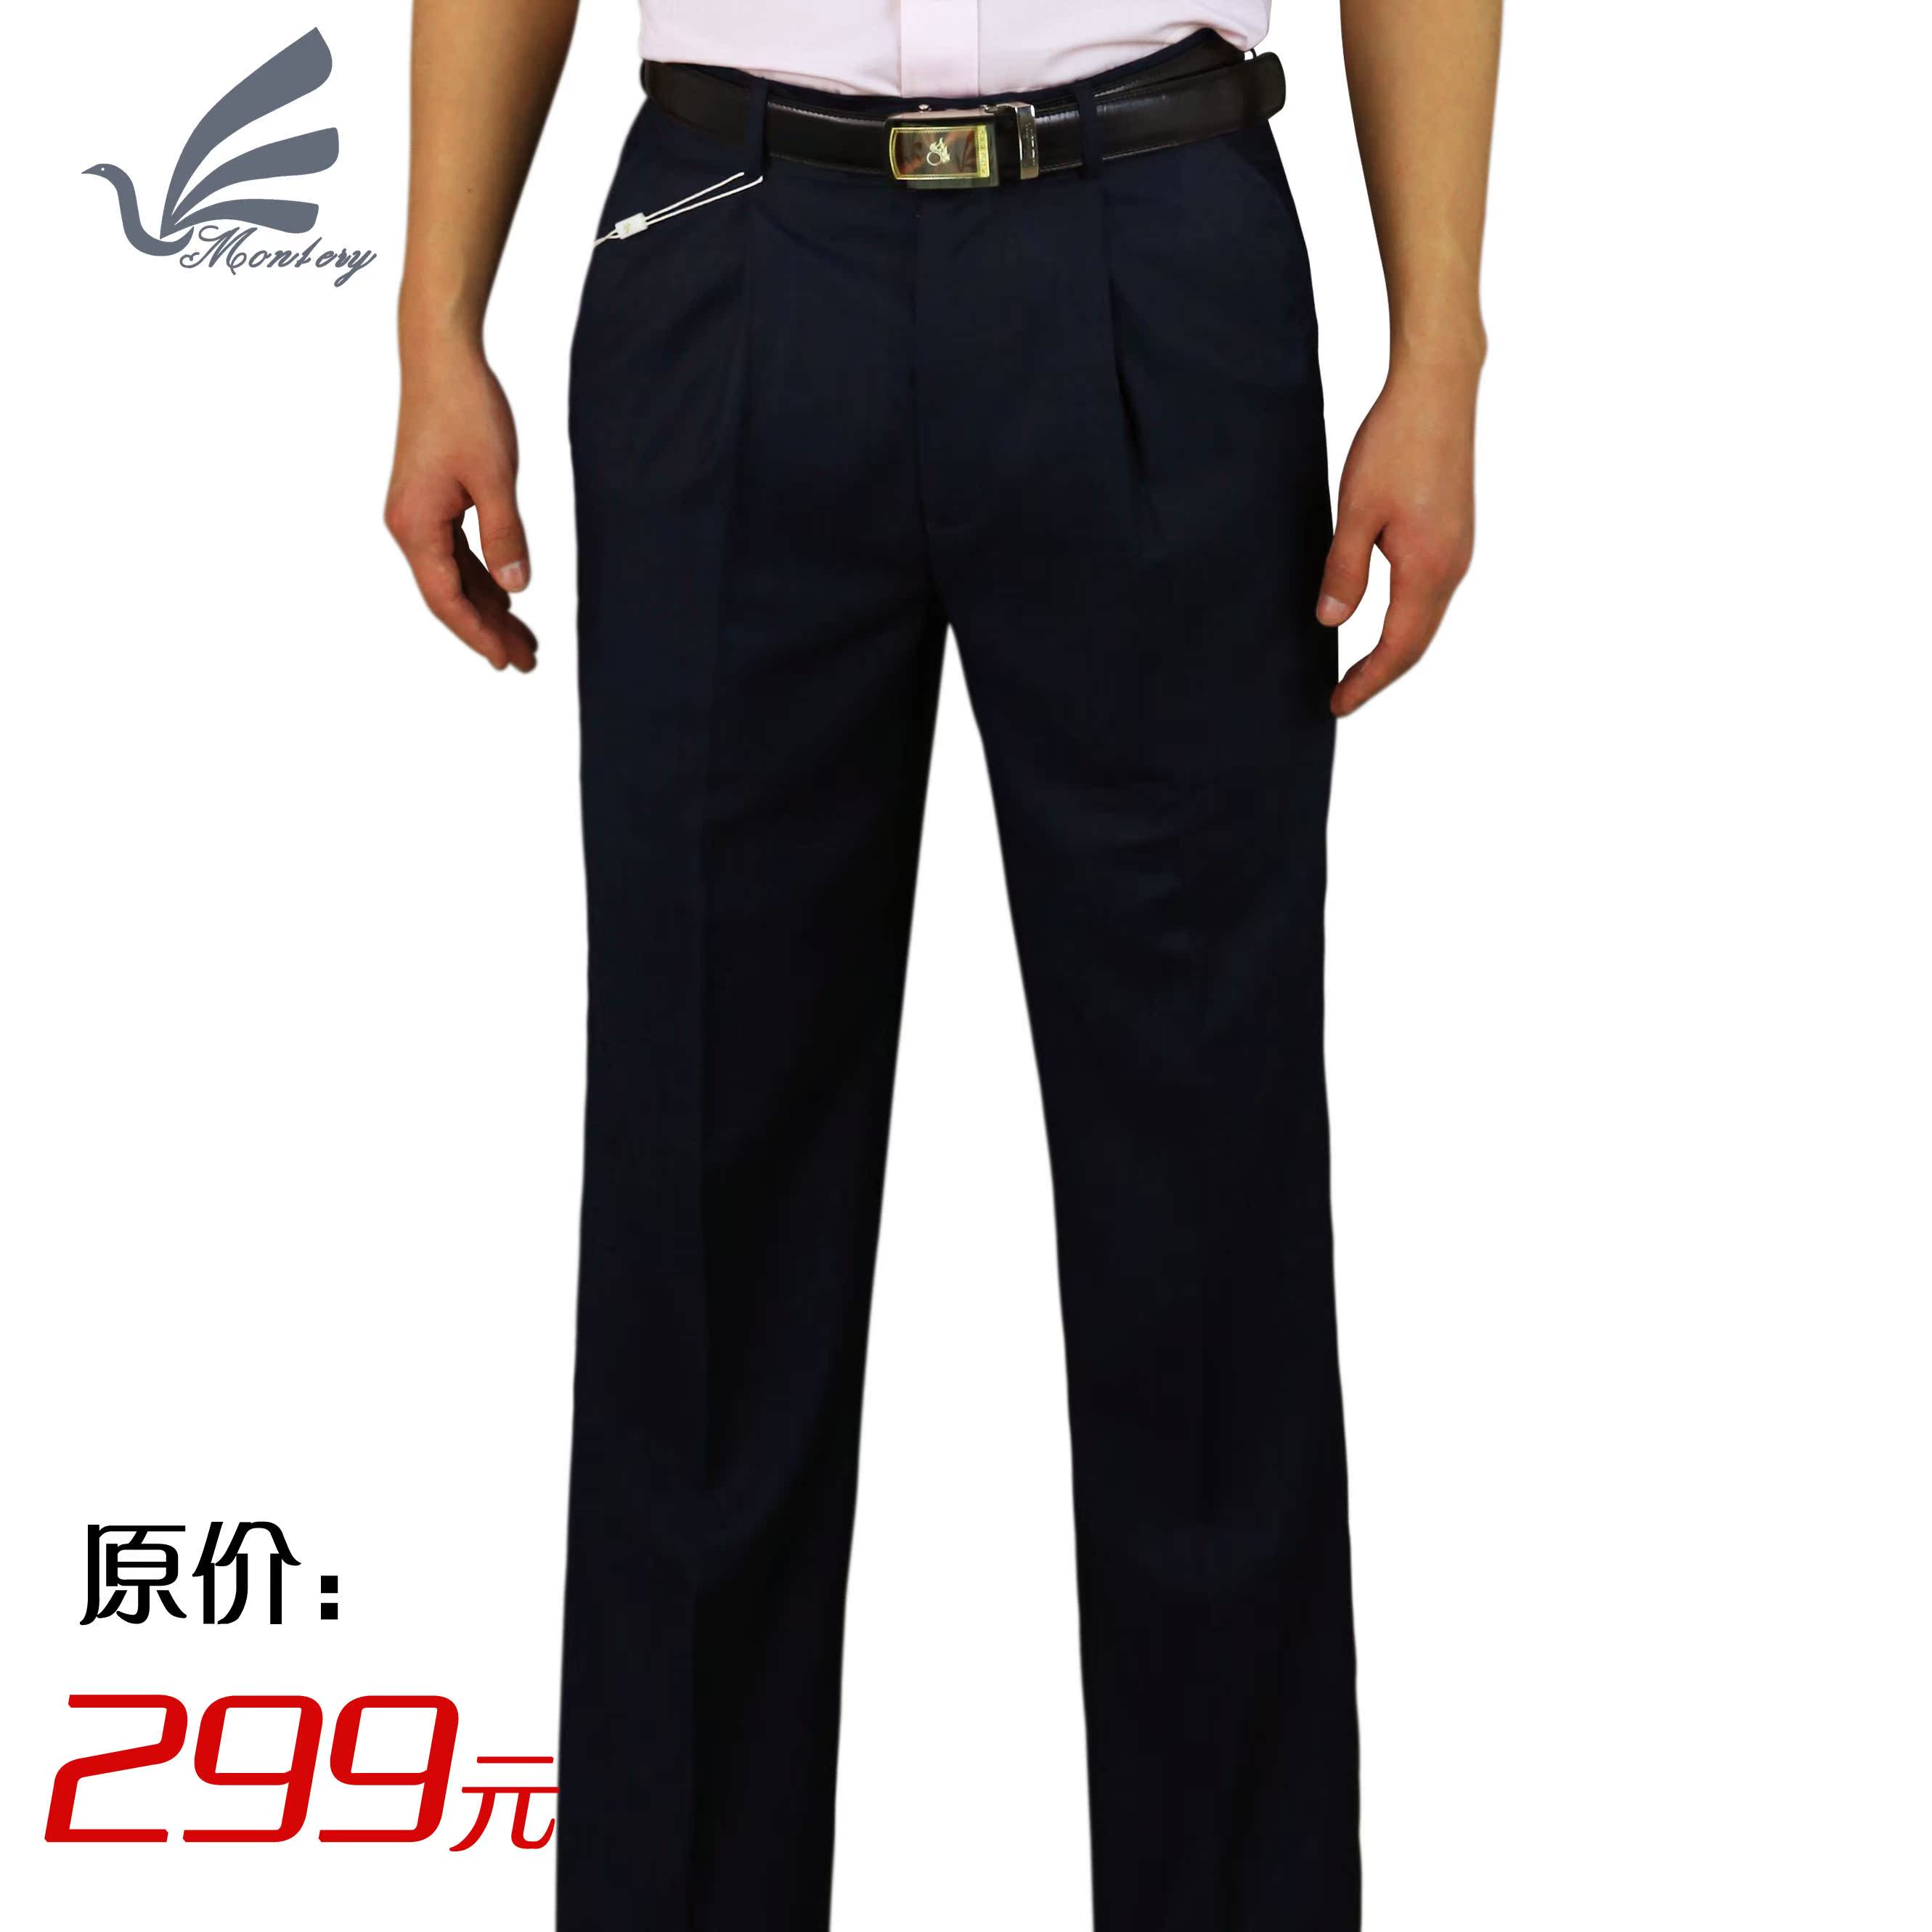 特价男士西裤 长裤子 中年男装夏季西裤 男式休闲西裤 X8103S